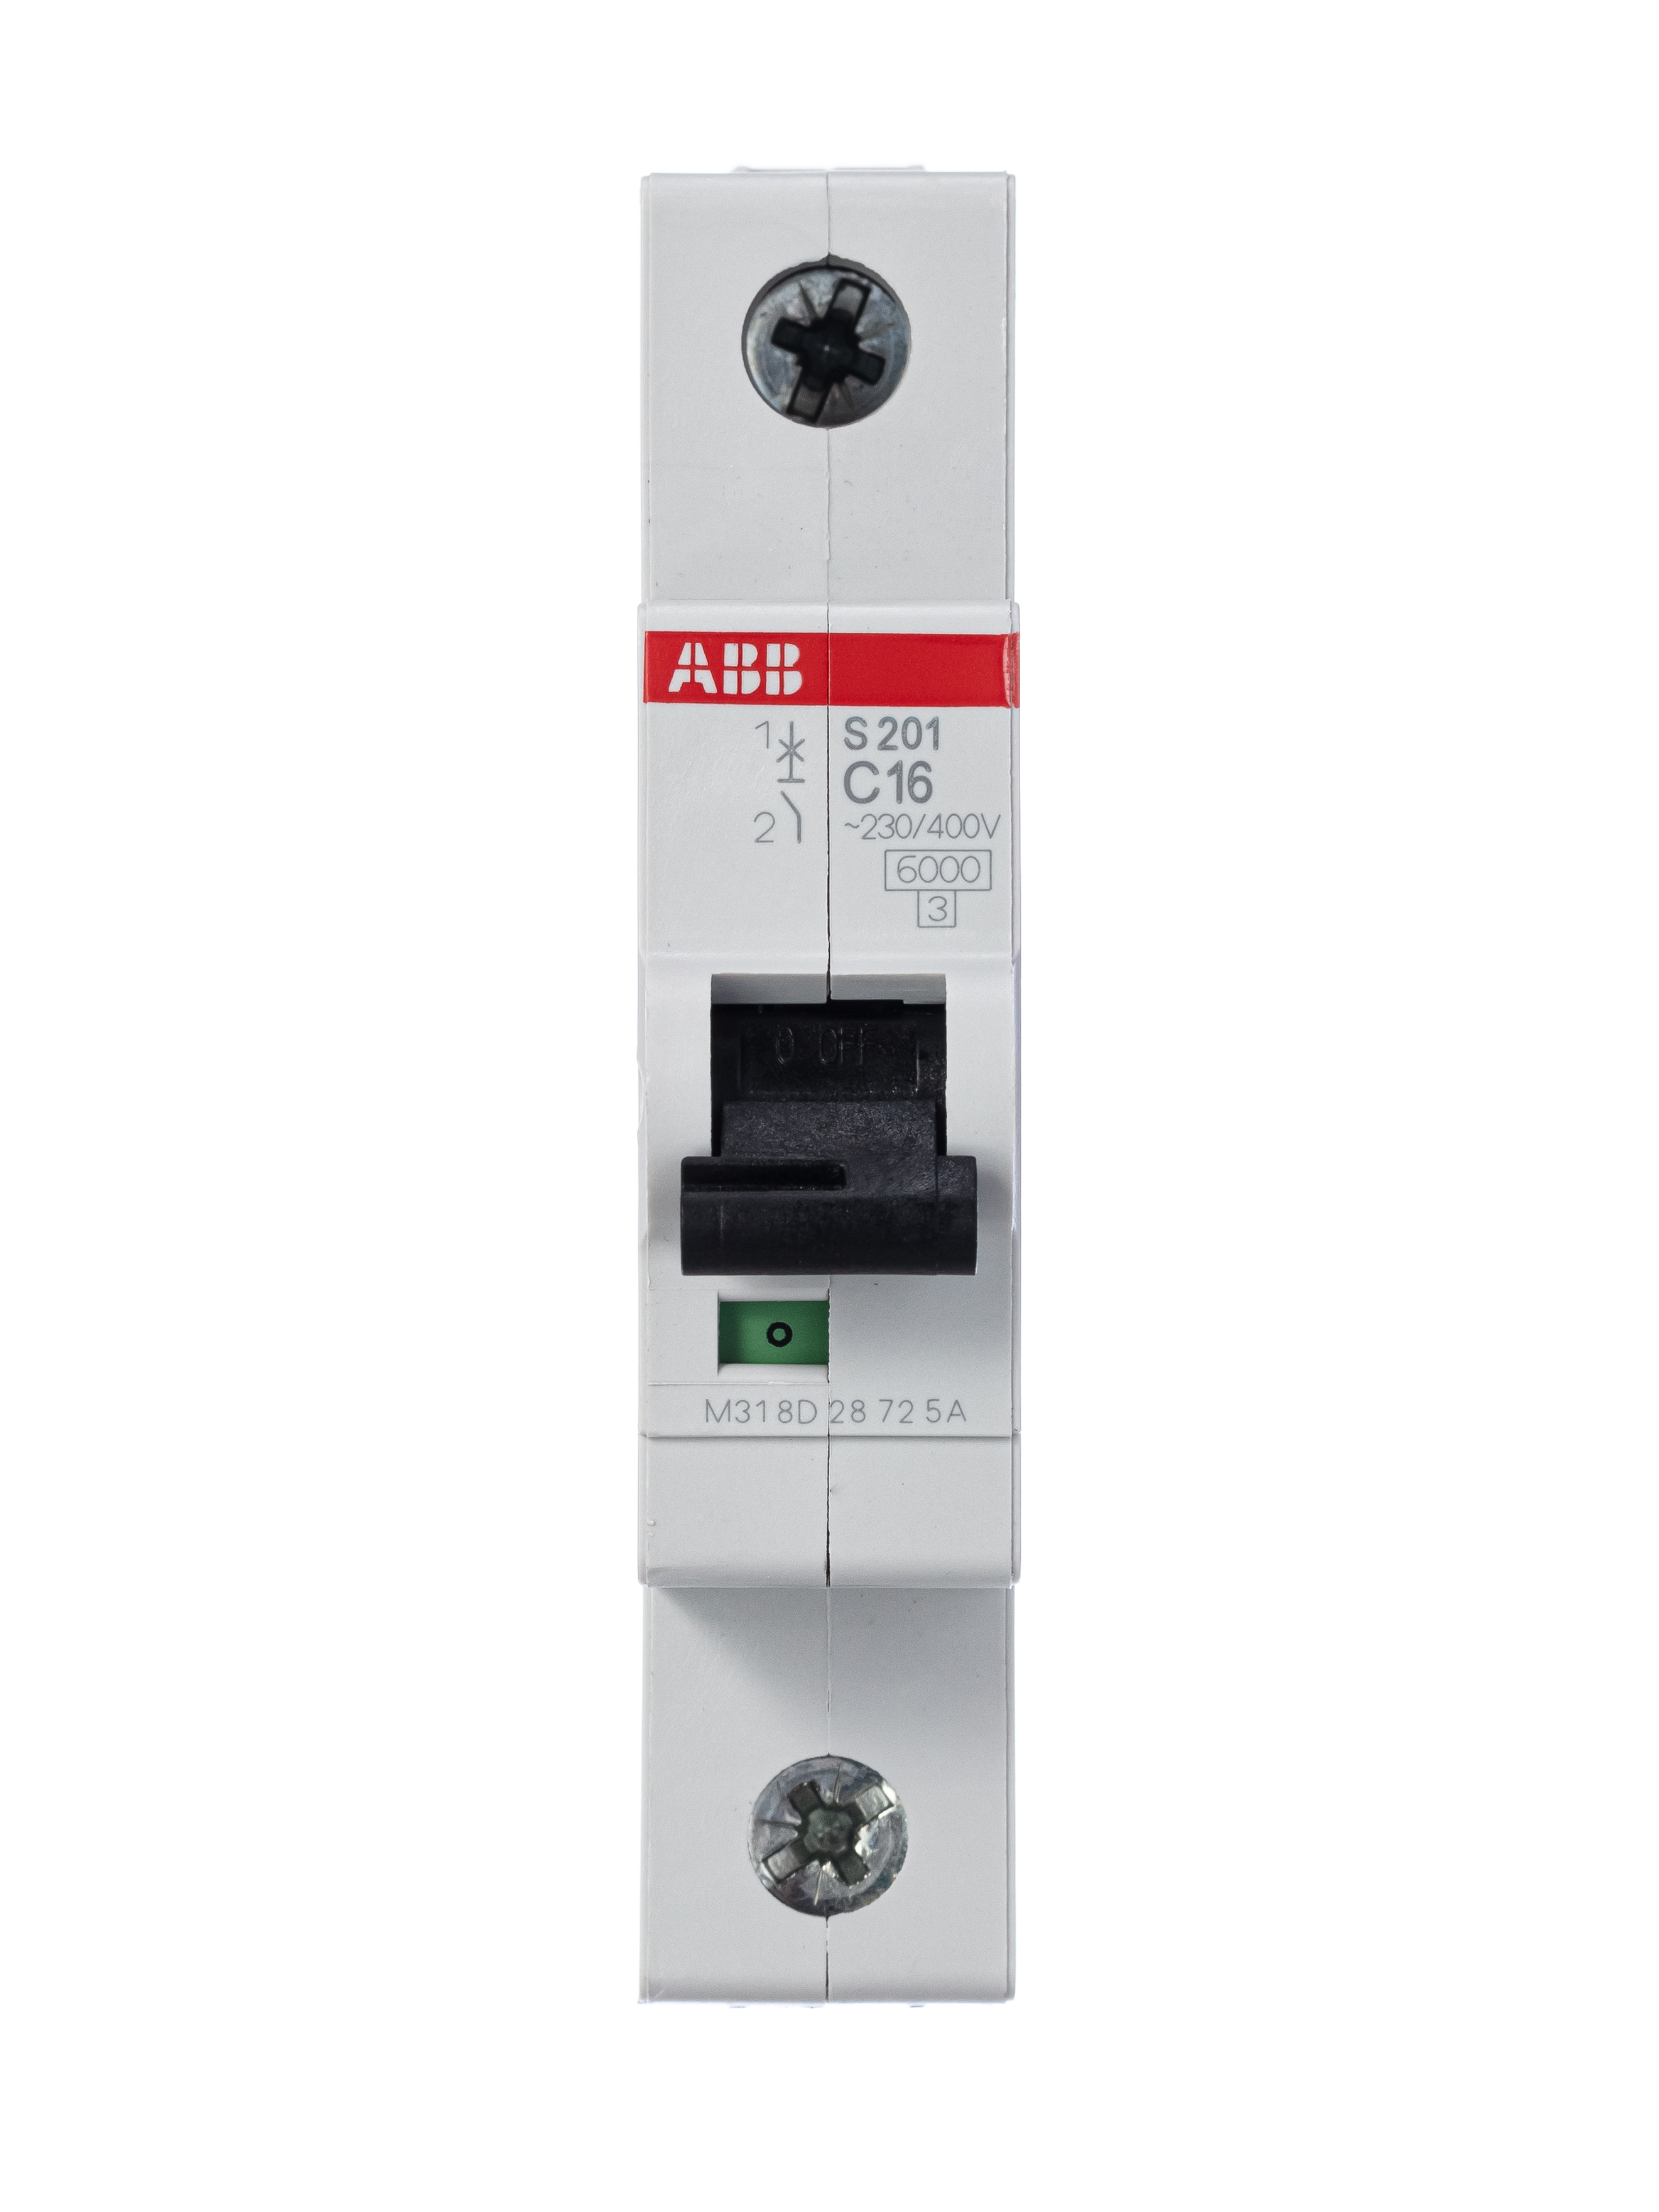 Однополюсные автоматические выключатели abb. Автоматический выключатель ABB s201. Автомат модульный ABB 1п c sh201l 4.5ка 16а 2cds241001r0164. ABB s201 c16. Автоматический однополюсный выключатель ABB s201.